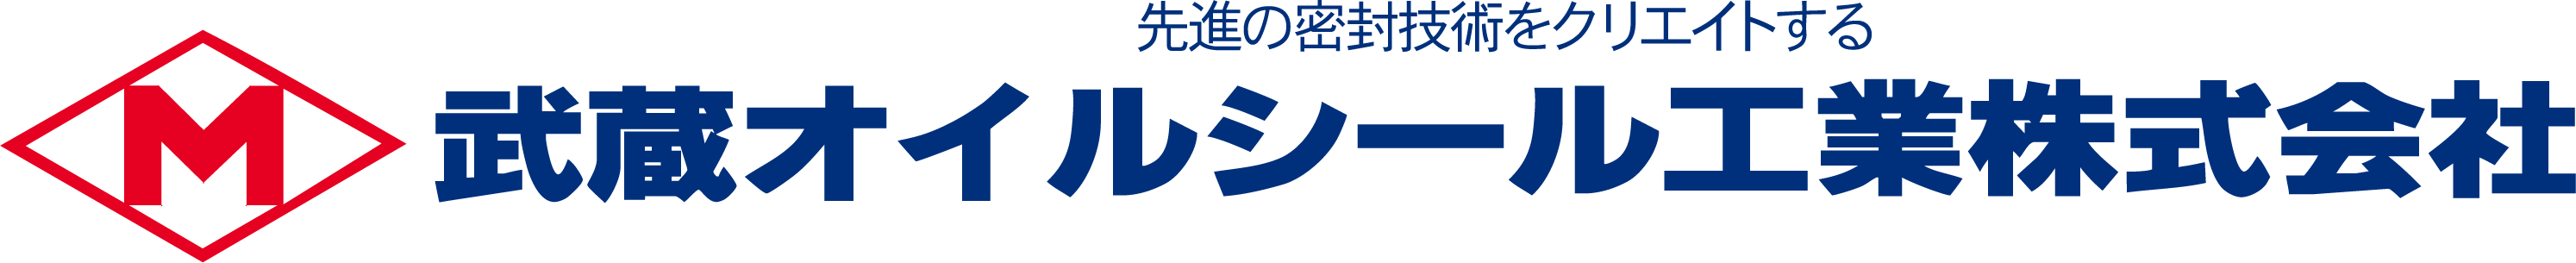 新製品情報 - 武蔵オイルシール工業株式会社